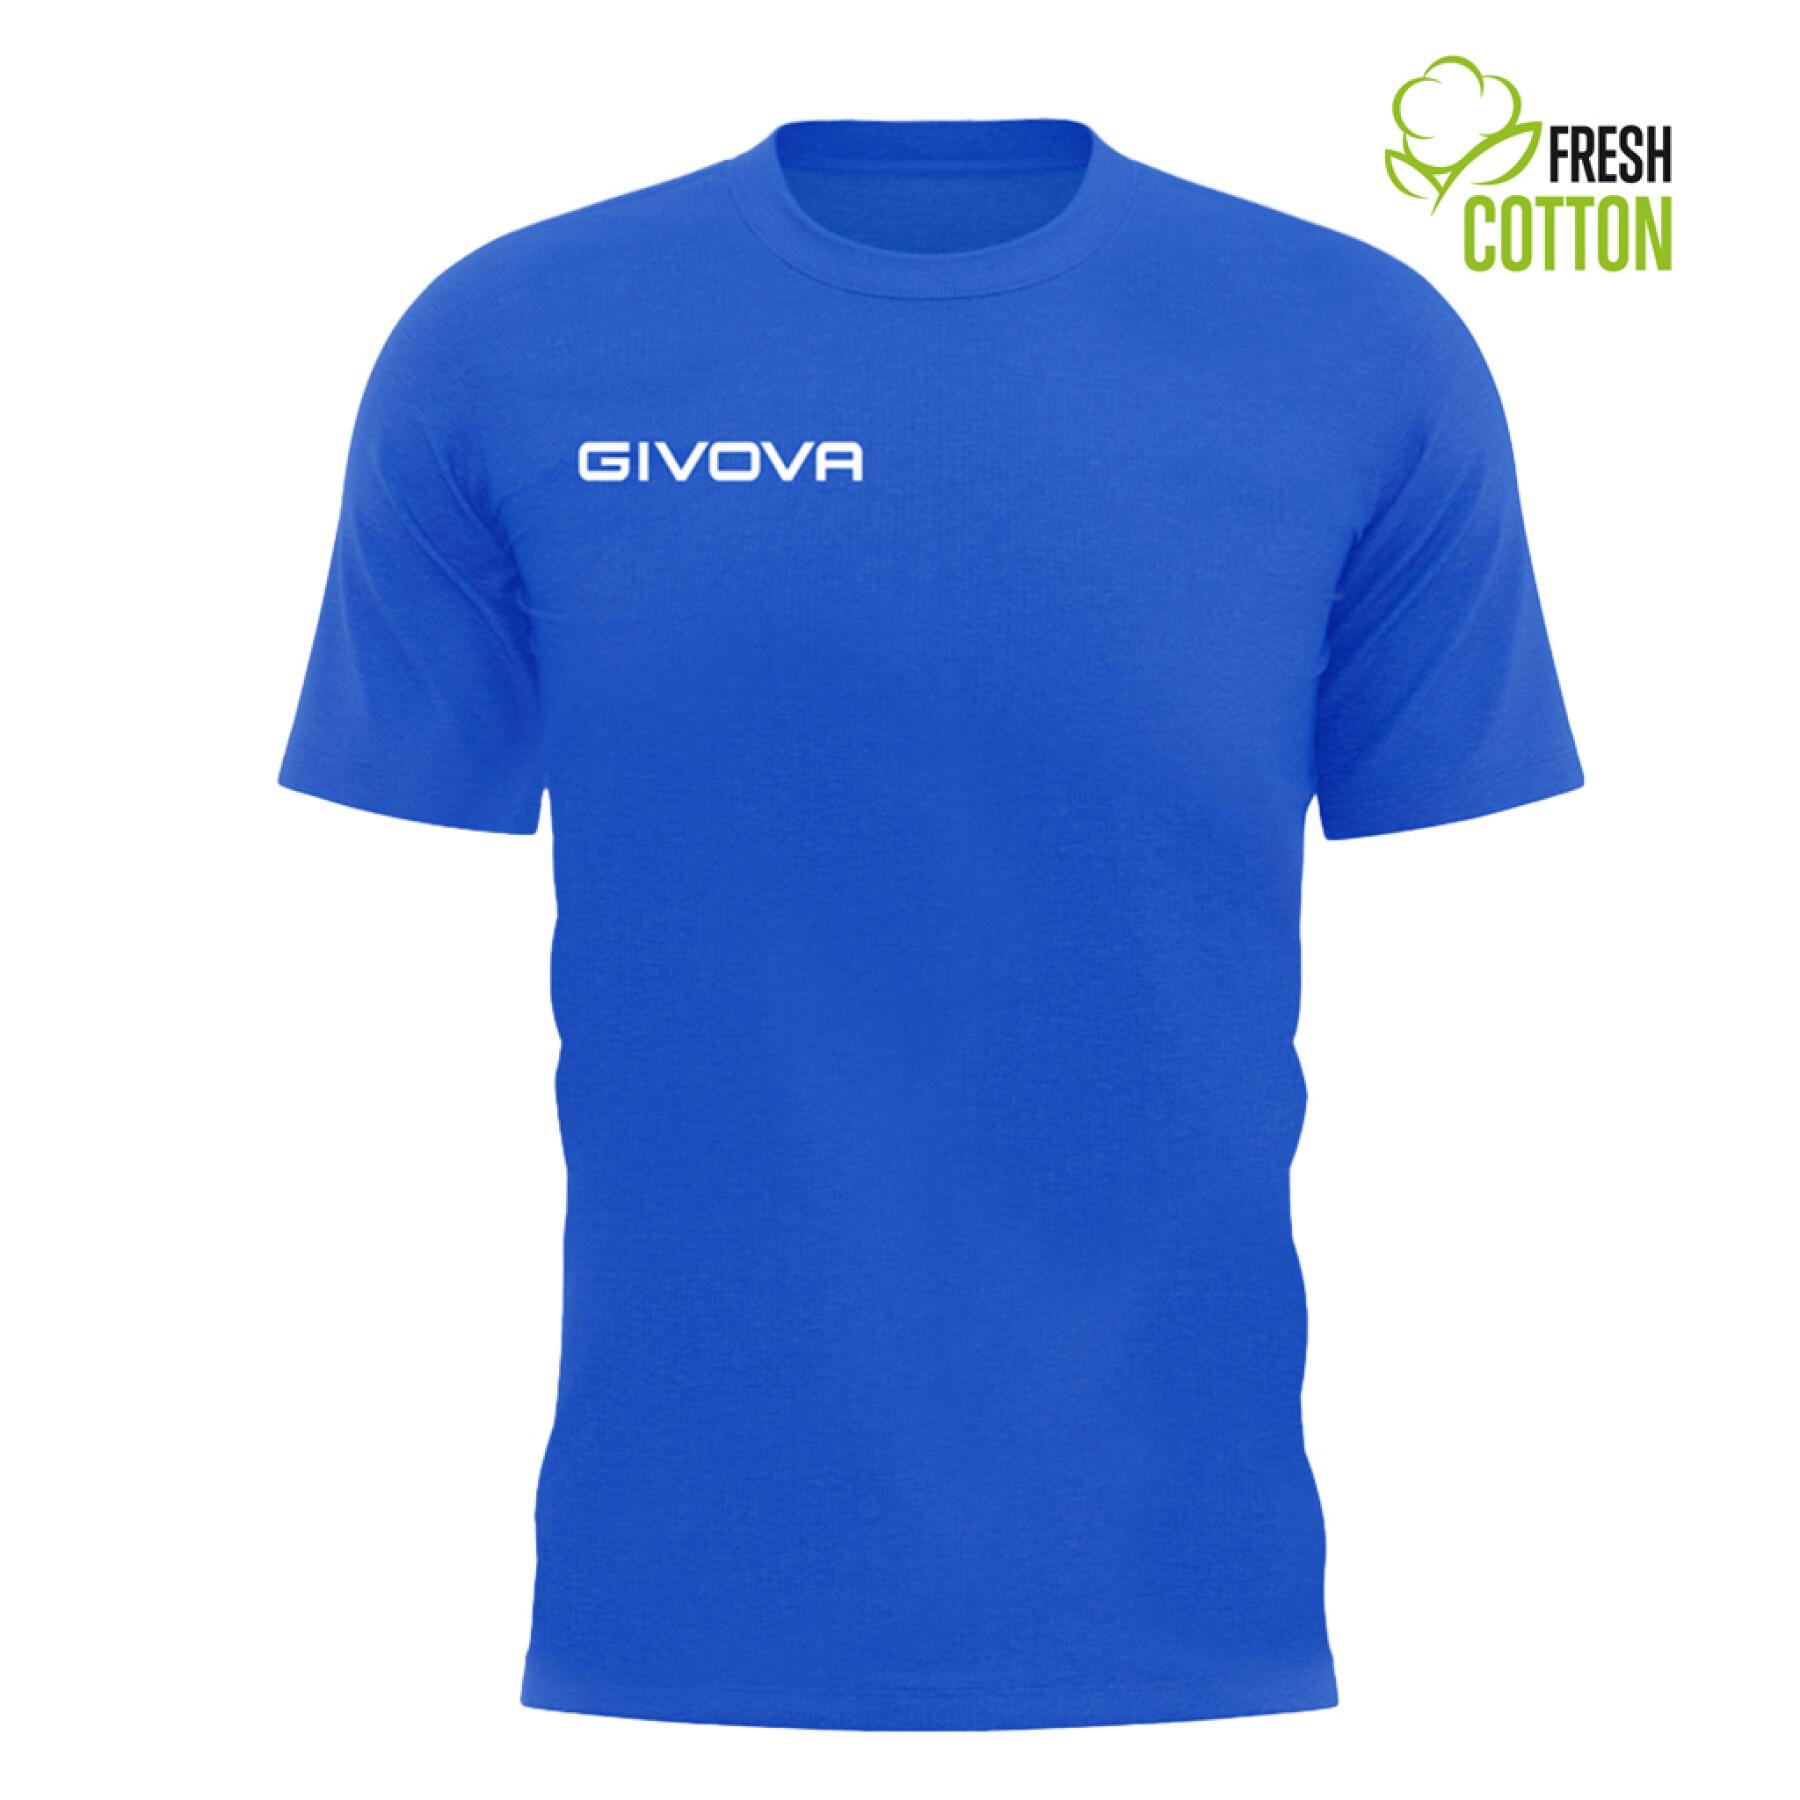 Maglietta in cotone Givova Fresh